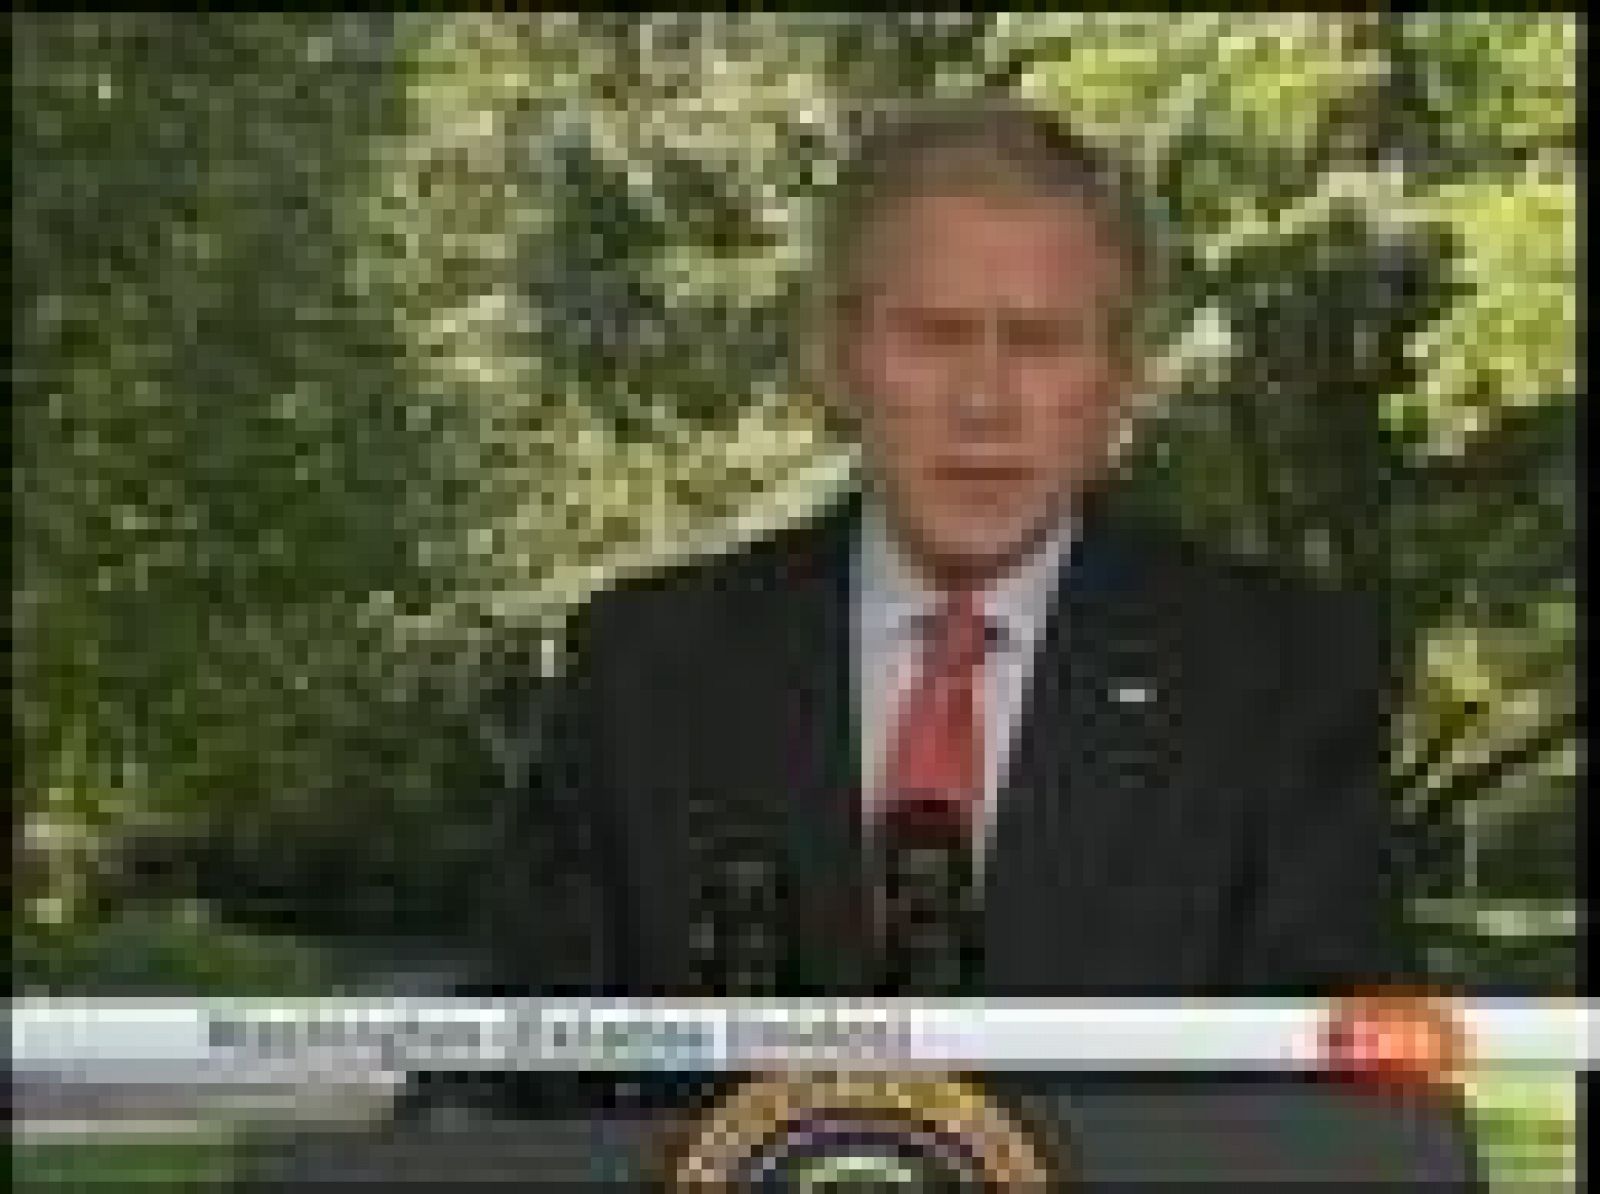 El Presidente de Estados Unidos, George W. Bush, ha suspendido un viaje que tenía previsto a Florida y Alabama para permanecer en Washington supervisando la situación de los mercados financieros.